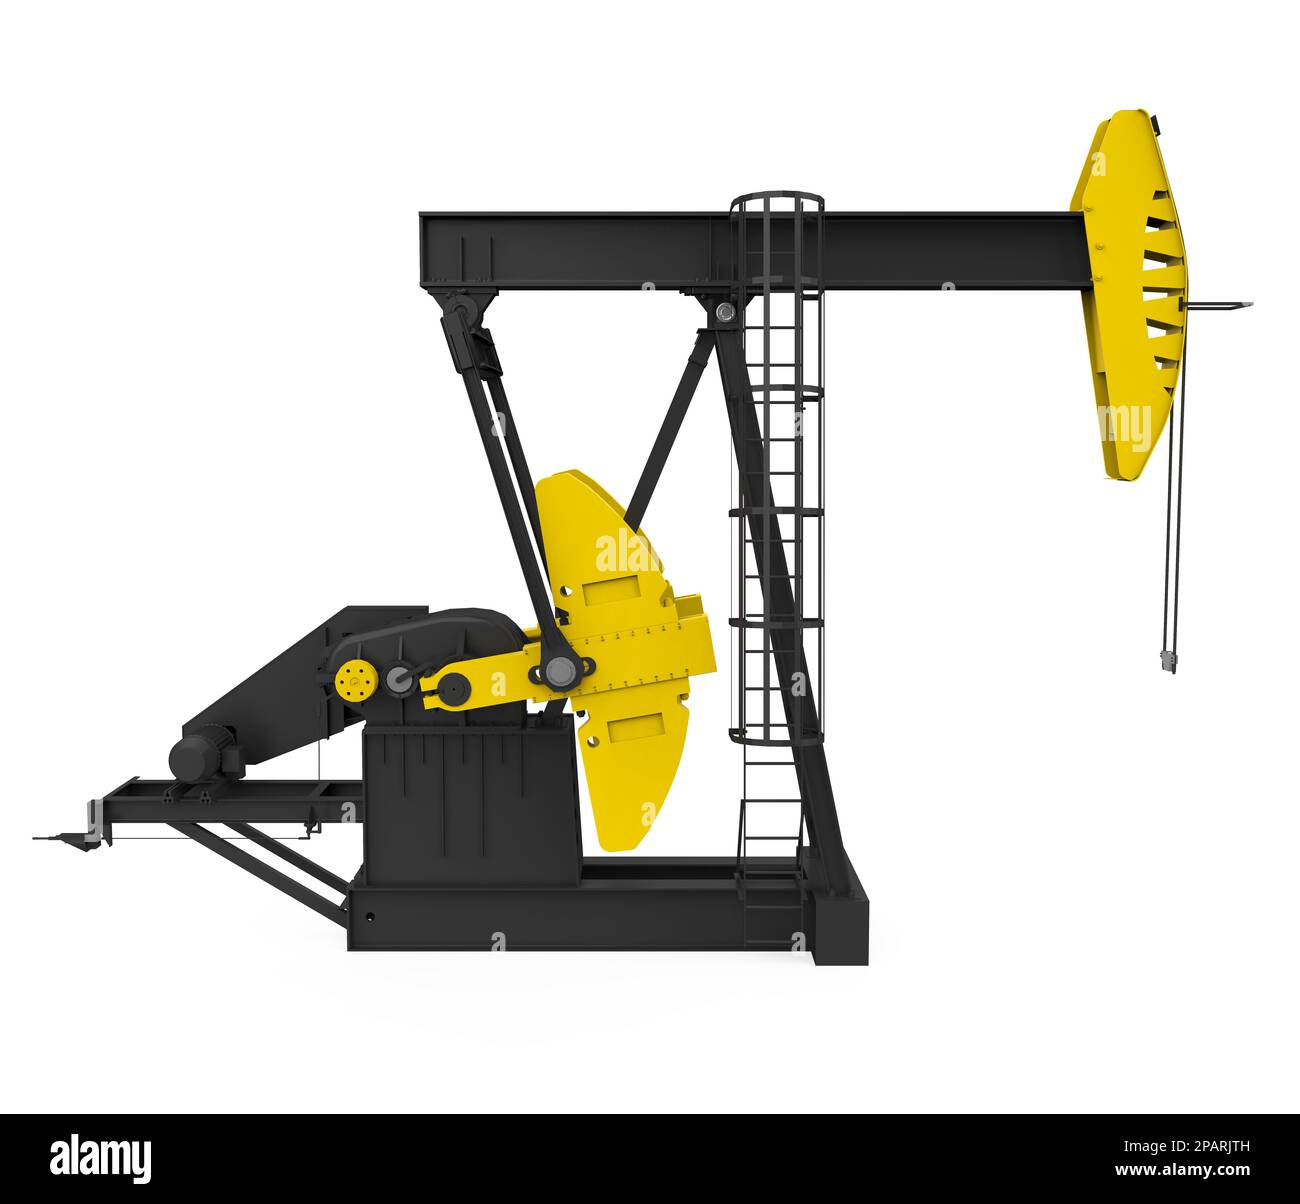 Extraktion Der Pumpjack-Öl-Pumpe Fracking-Ausrüstungs-natürlichen Ressource  Stockbild - Bild von industrie, geschäft: 109162657